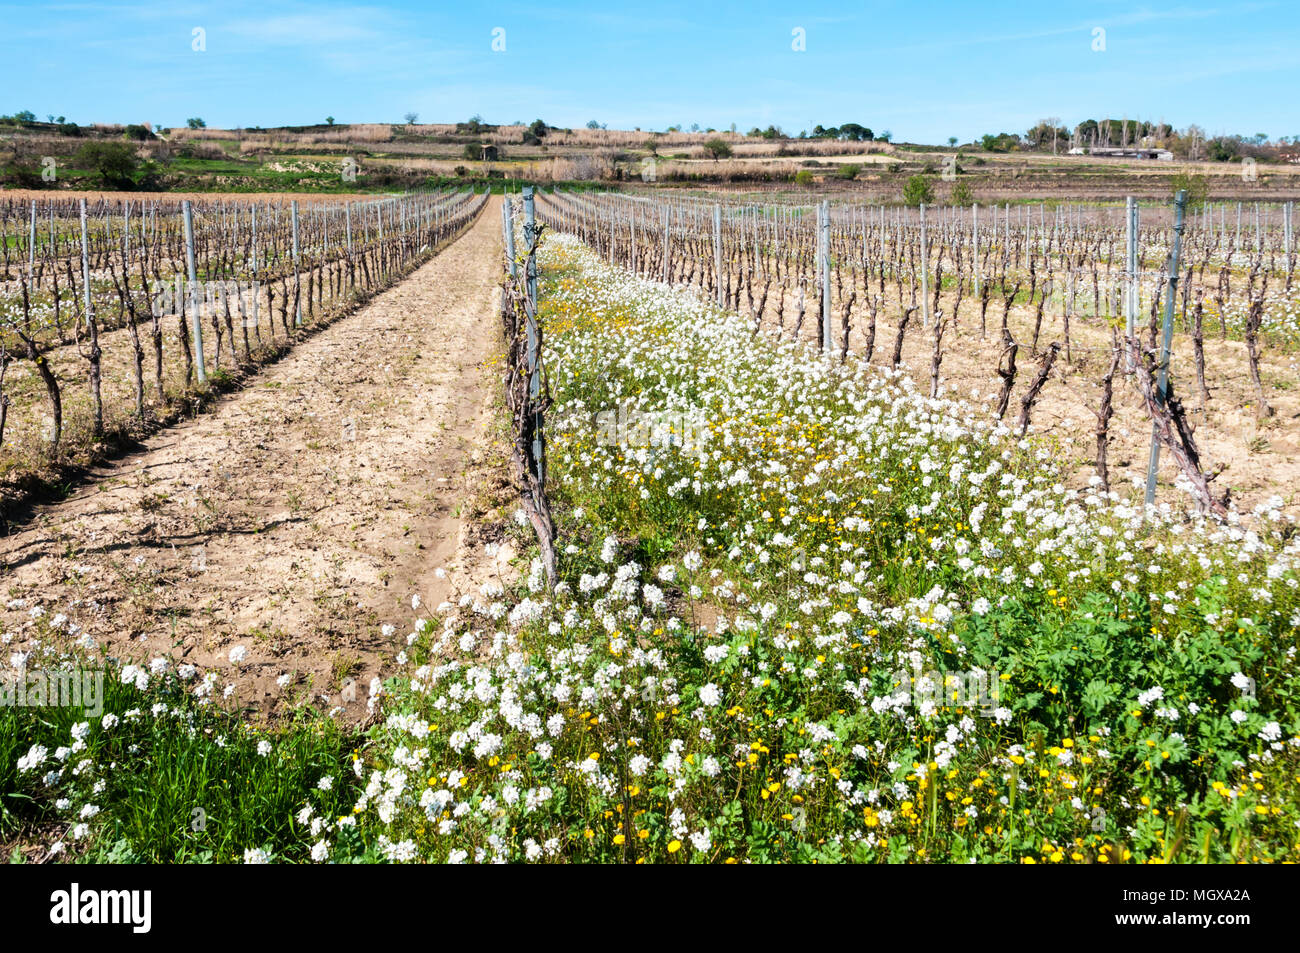 Vigne in crescita nel Herault, regione a sud della Francia. Erba e fiori ha permesso di crescere tra ogni terza fila di vitigni per risparmiare acqua nel suolo. Foto Stock